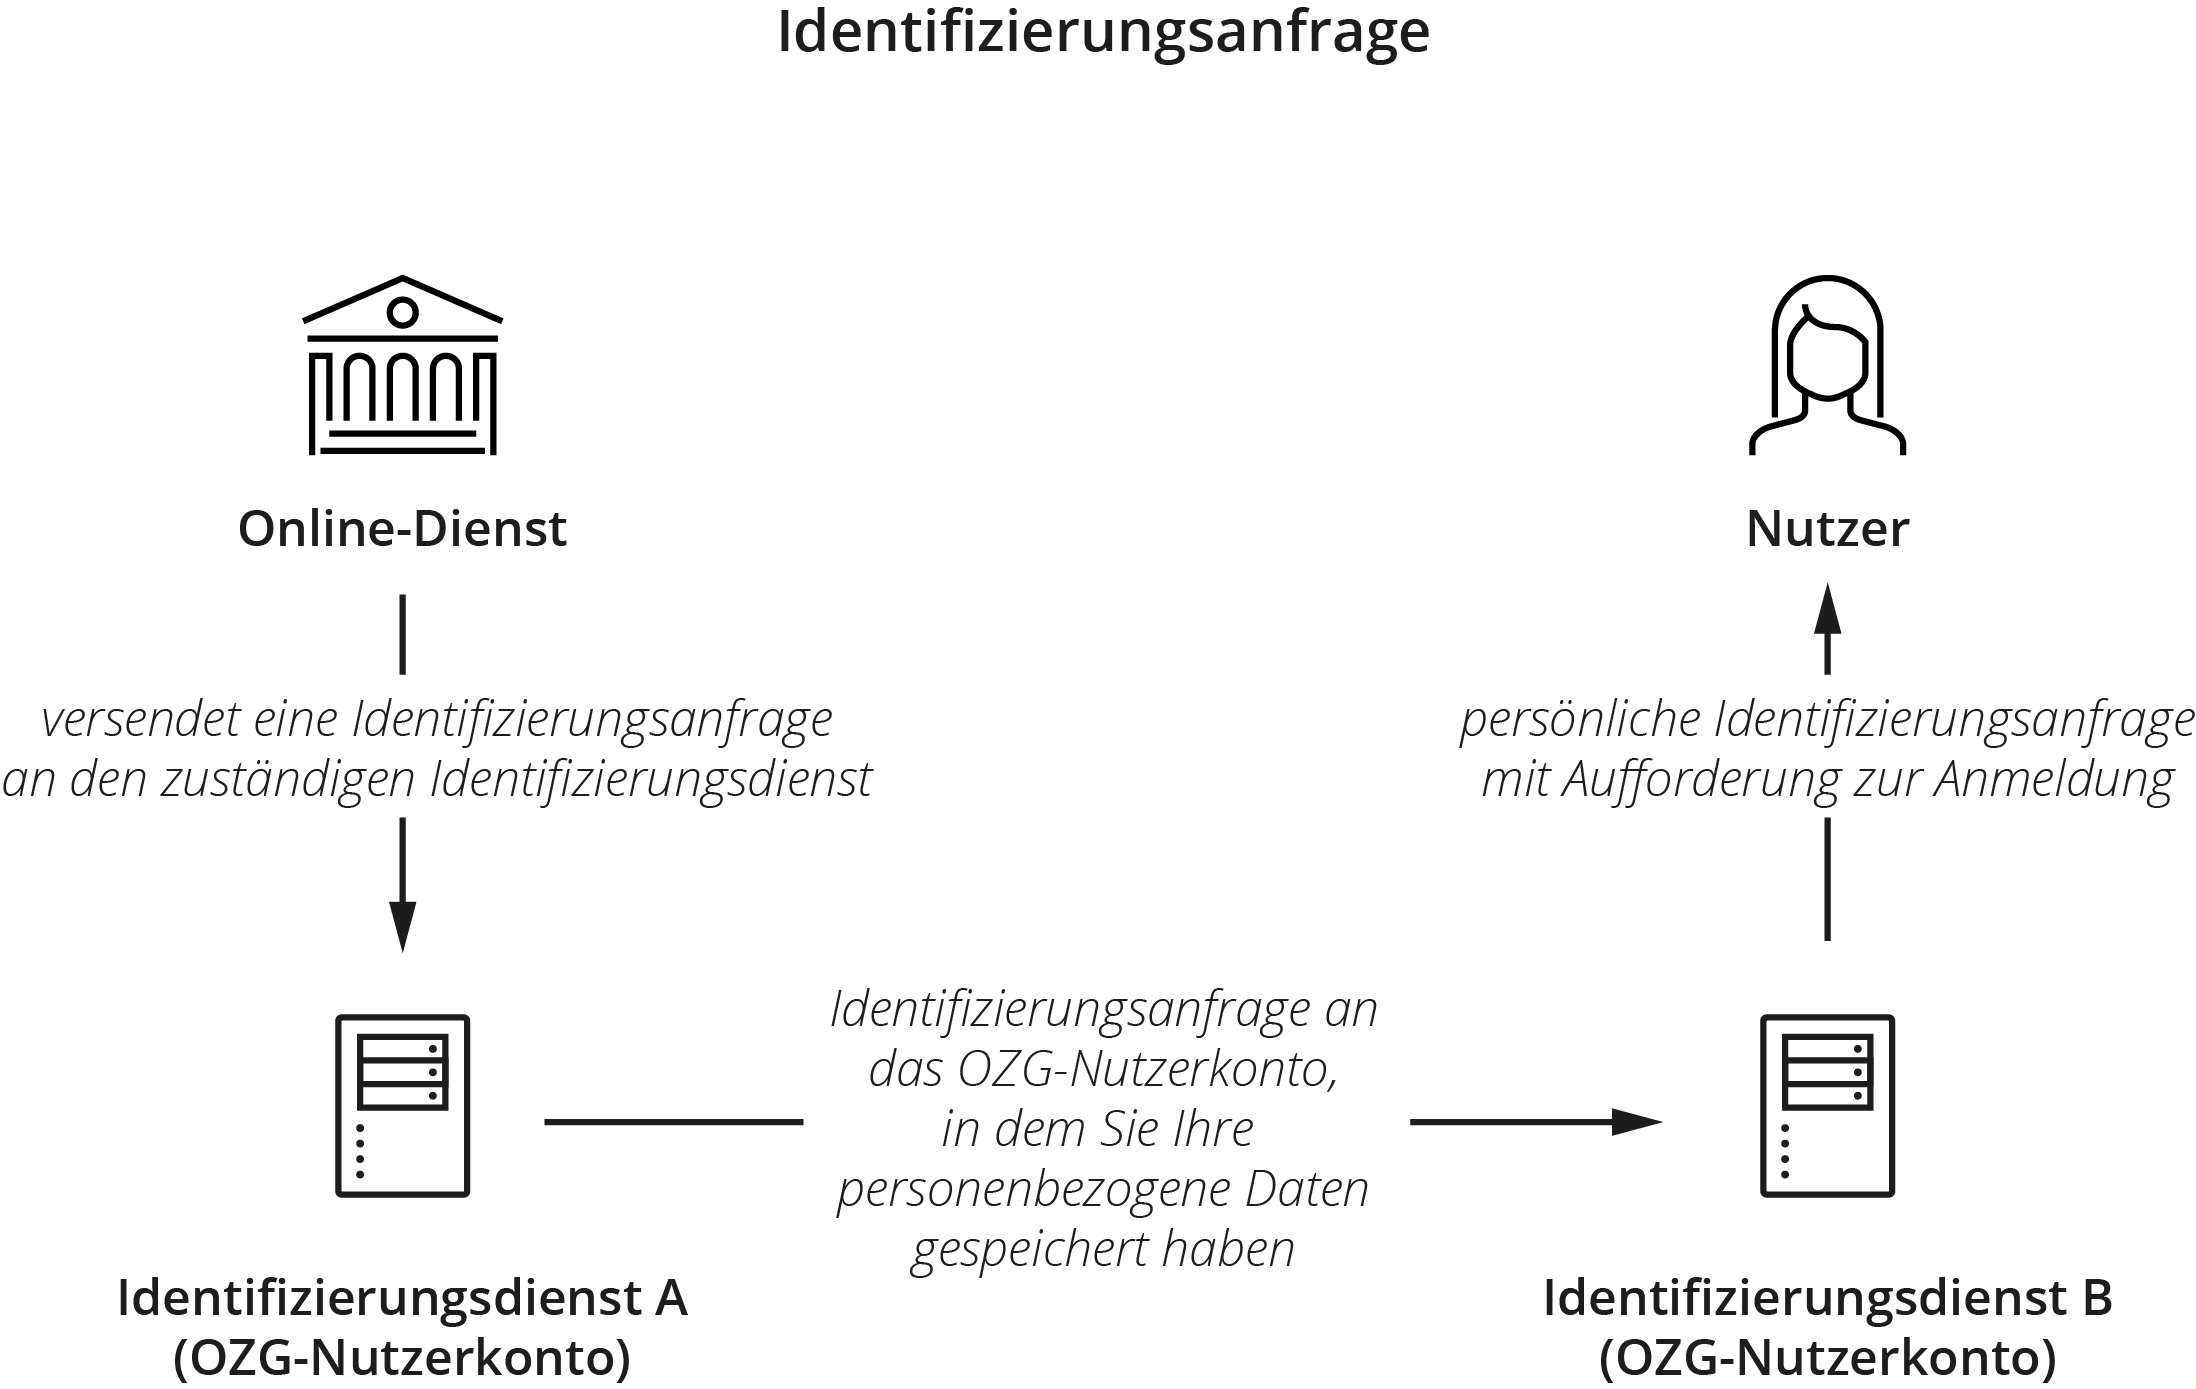 Grafische Darstellung der bei einer Identifizierungsanfrage übertragenen Daten vom Online-Dienst über die beiden Identifizierungsdienste zum Nutzer